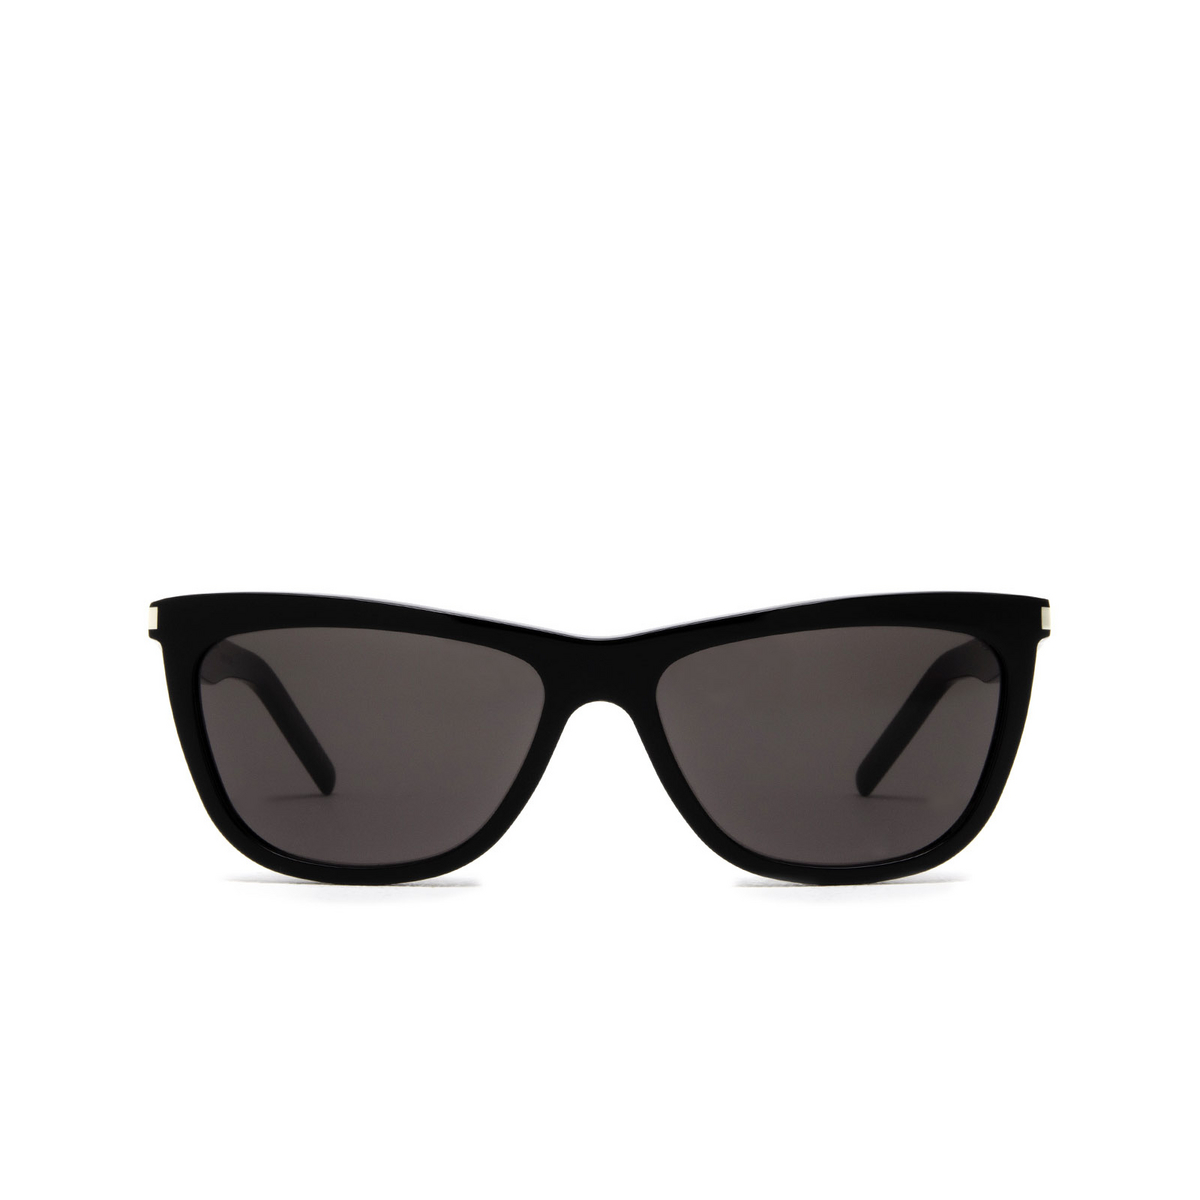 Saint Laurent SL 515 Sunglasses 001 Black - front view